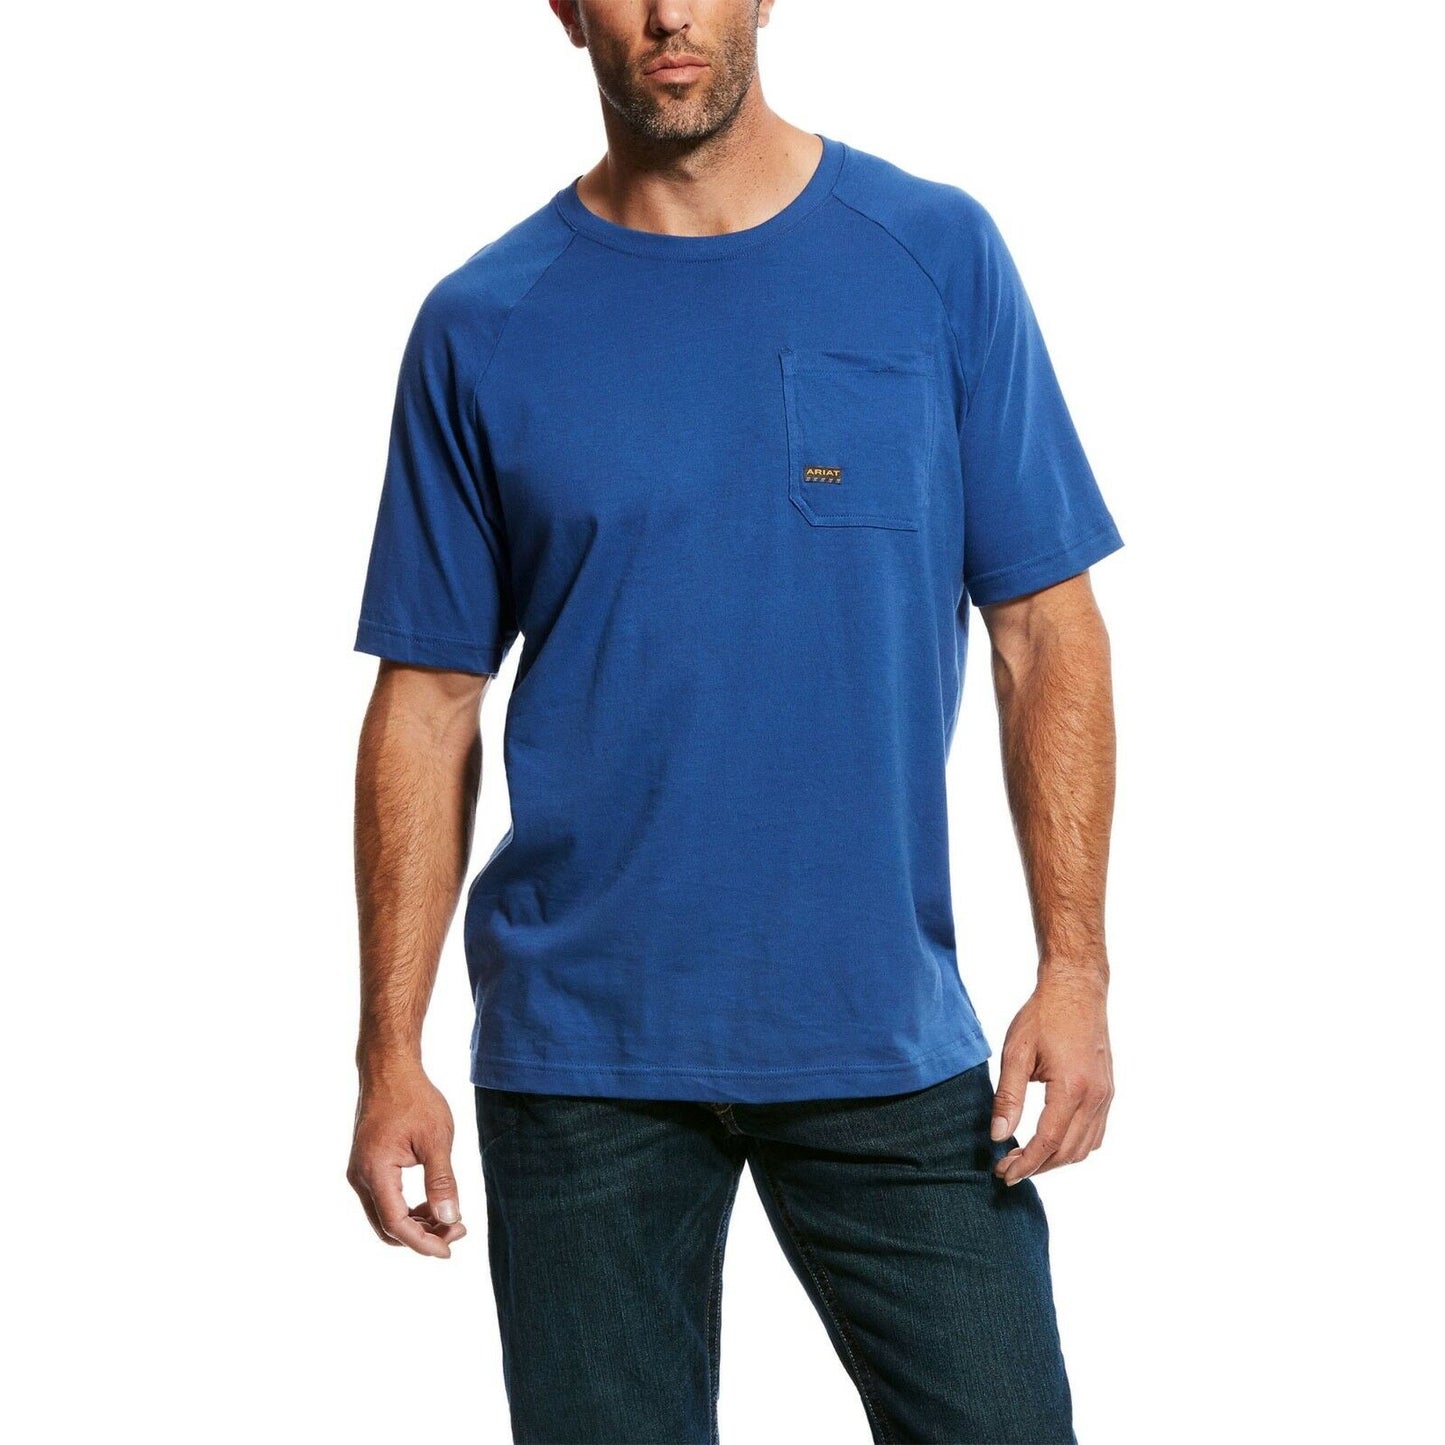 Ariat® Men's Rebar CottonStrong Blue Short Sleeve T-Shirt 10025377